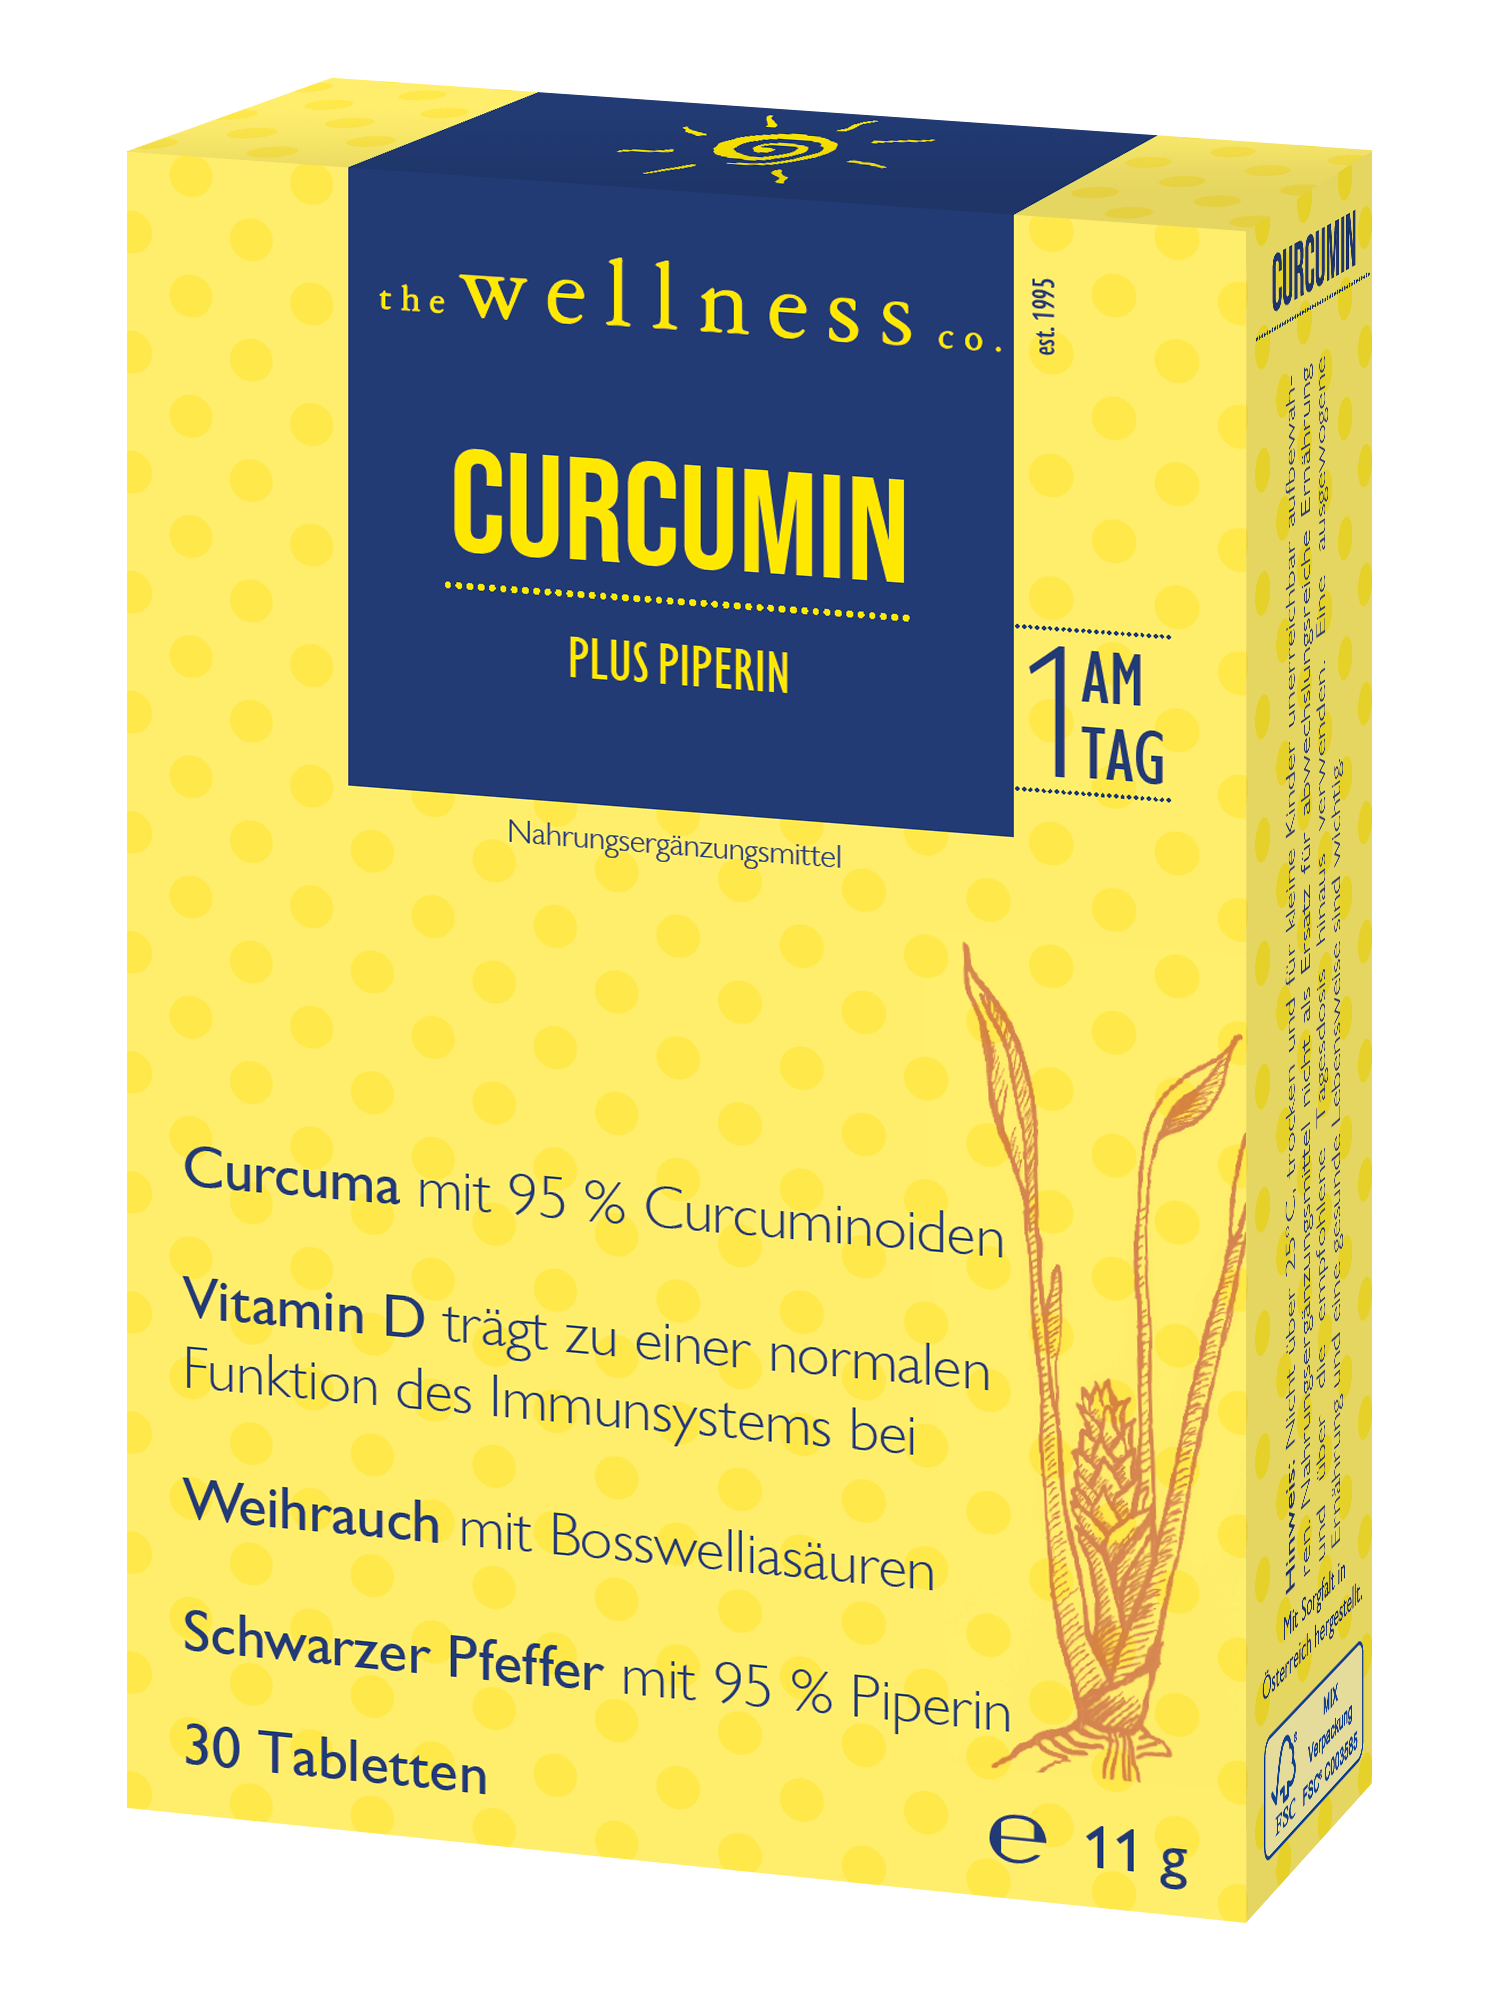 CURCUMIN + PIPERIN + WEIHRAUCH + VIT D